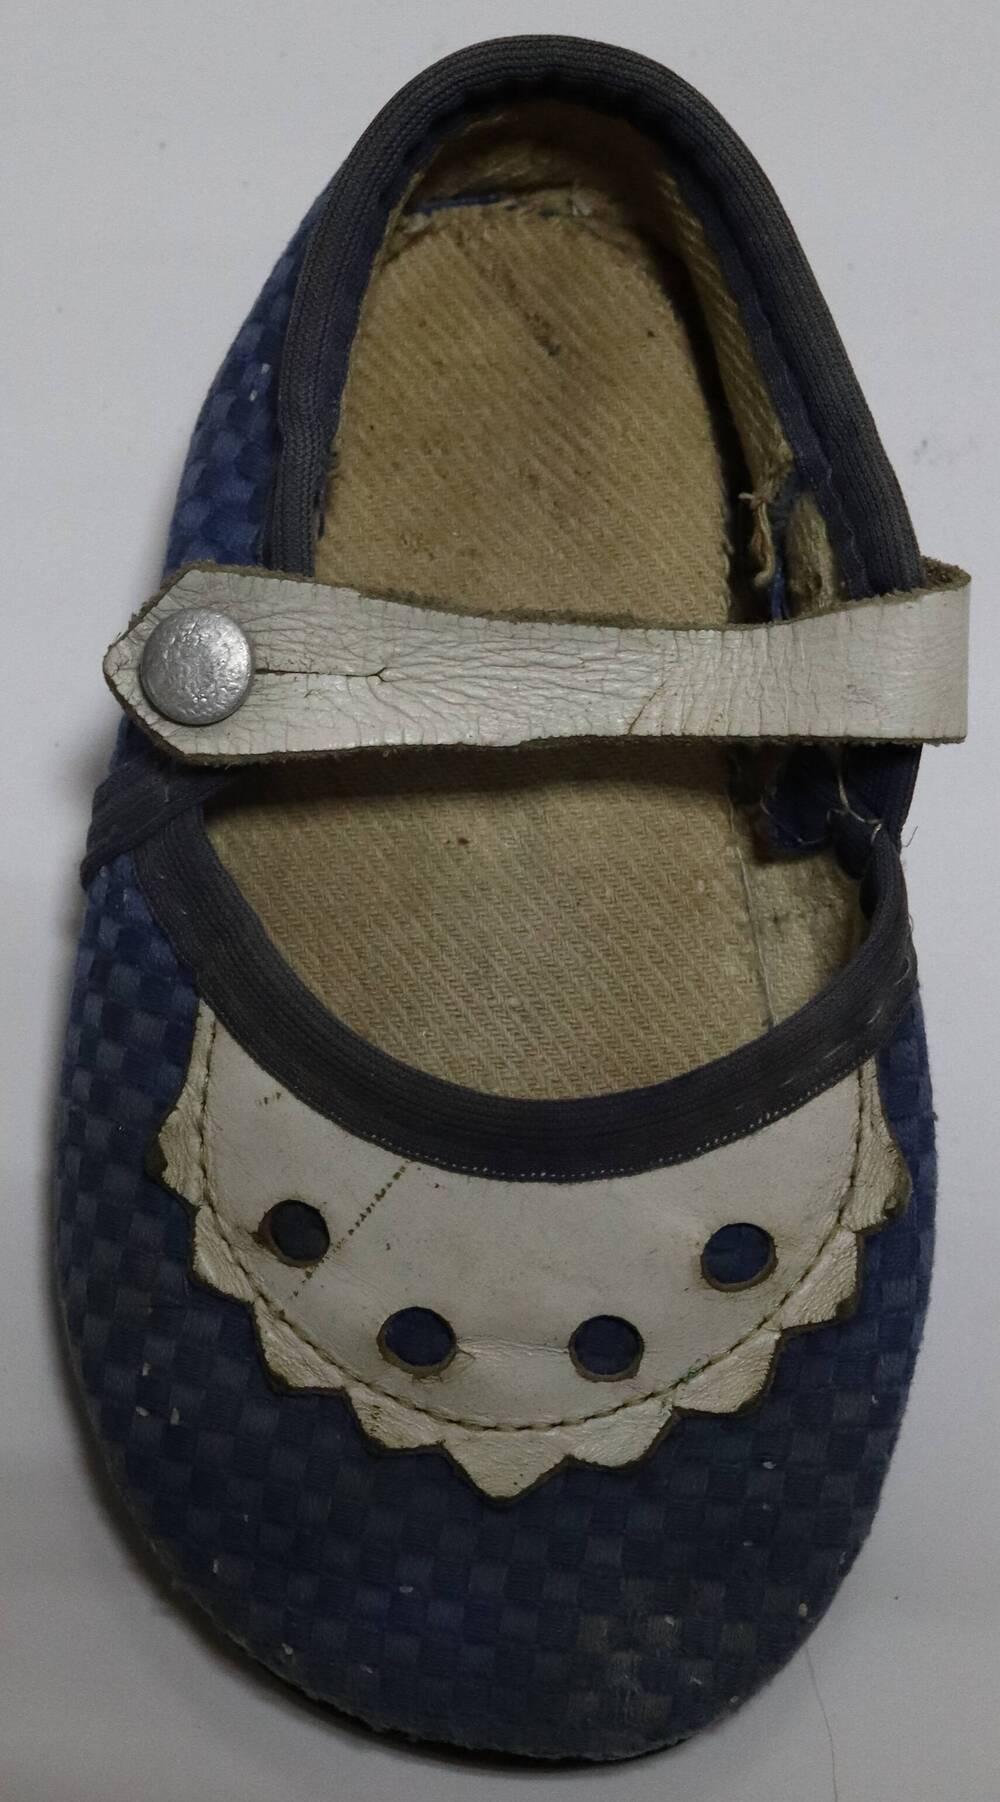 Сандалия (синего цвета с белым украшением и пряжкой на пуговице). Часть пары, правая.